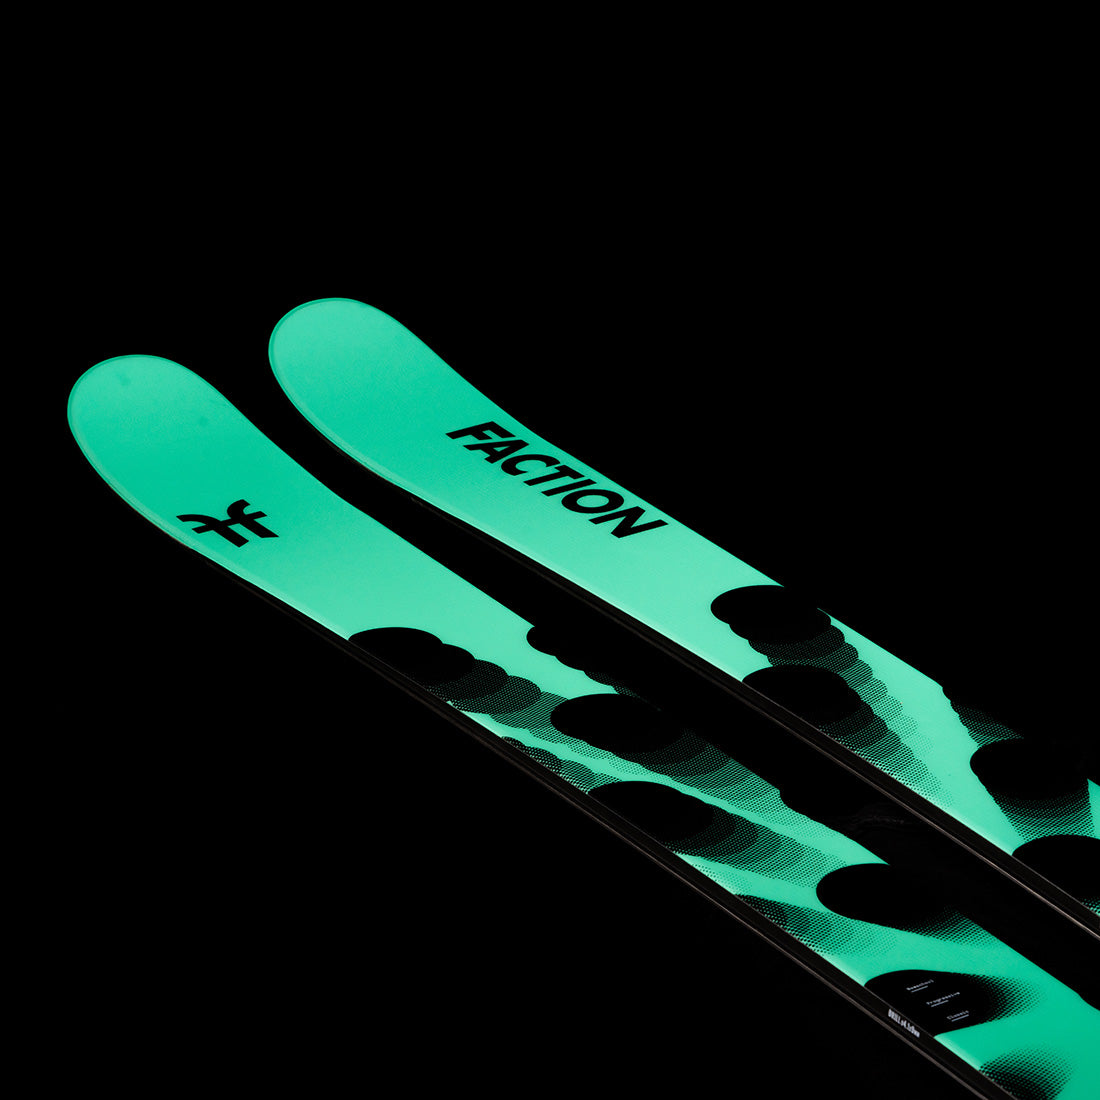 Faction Skis Studio 0X - 2024 Twin-Tip Park Ski